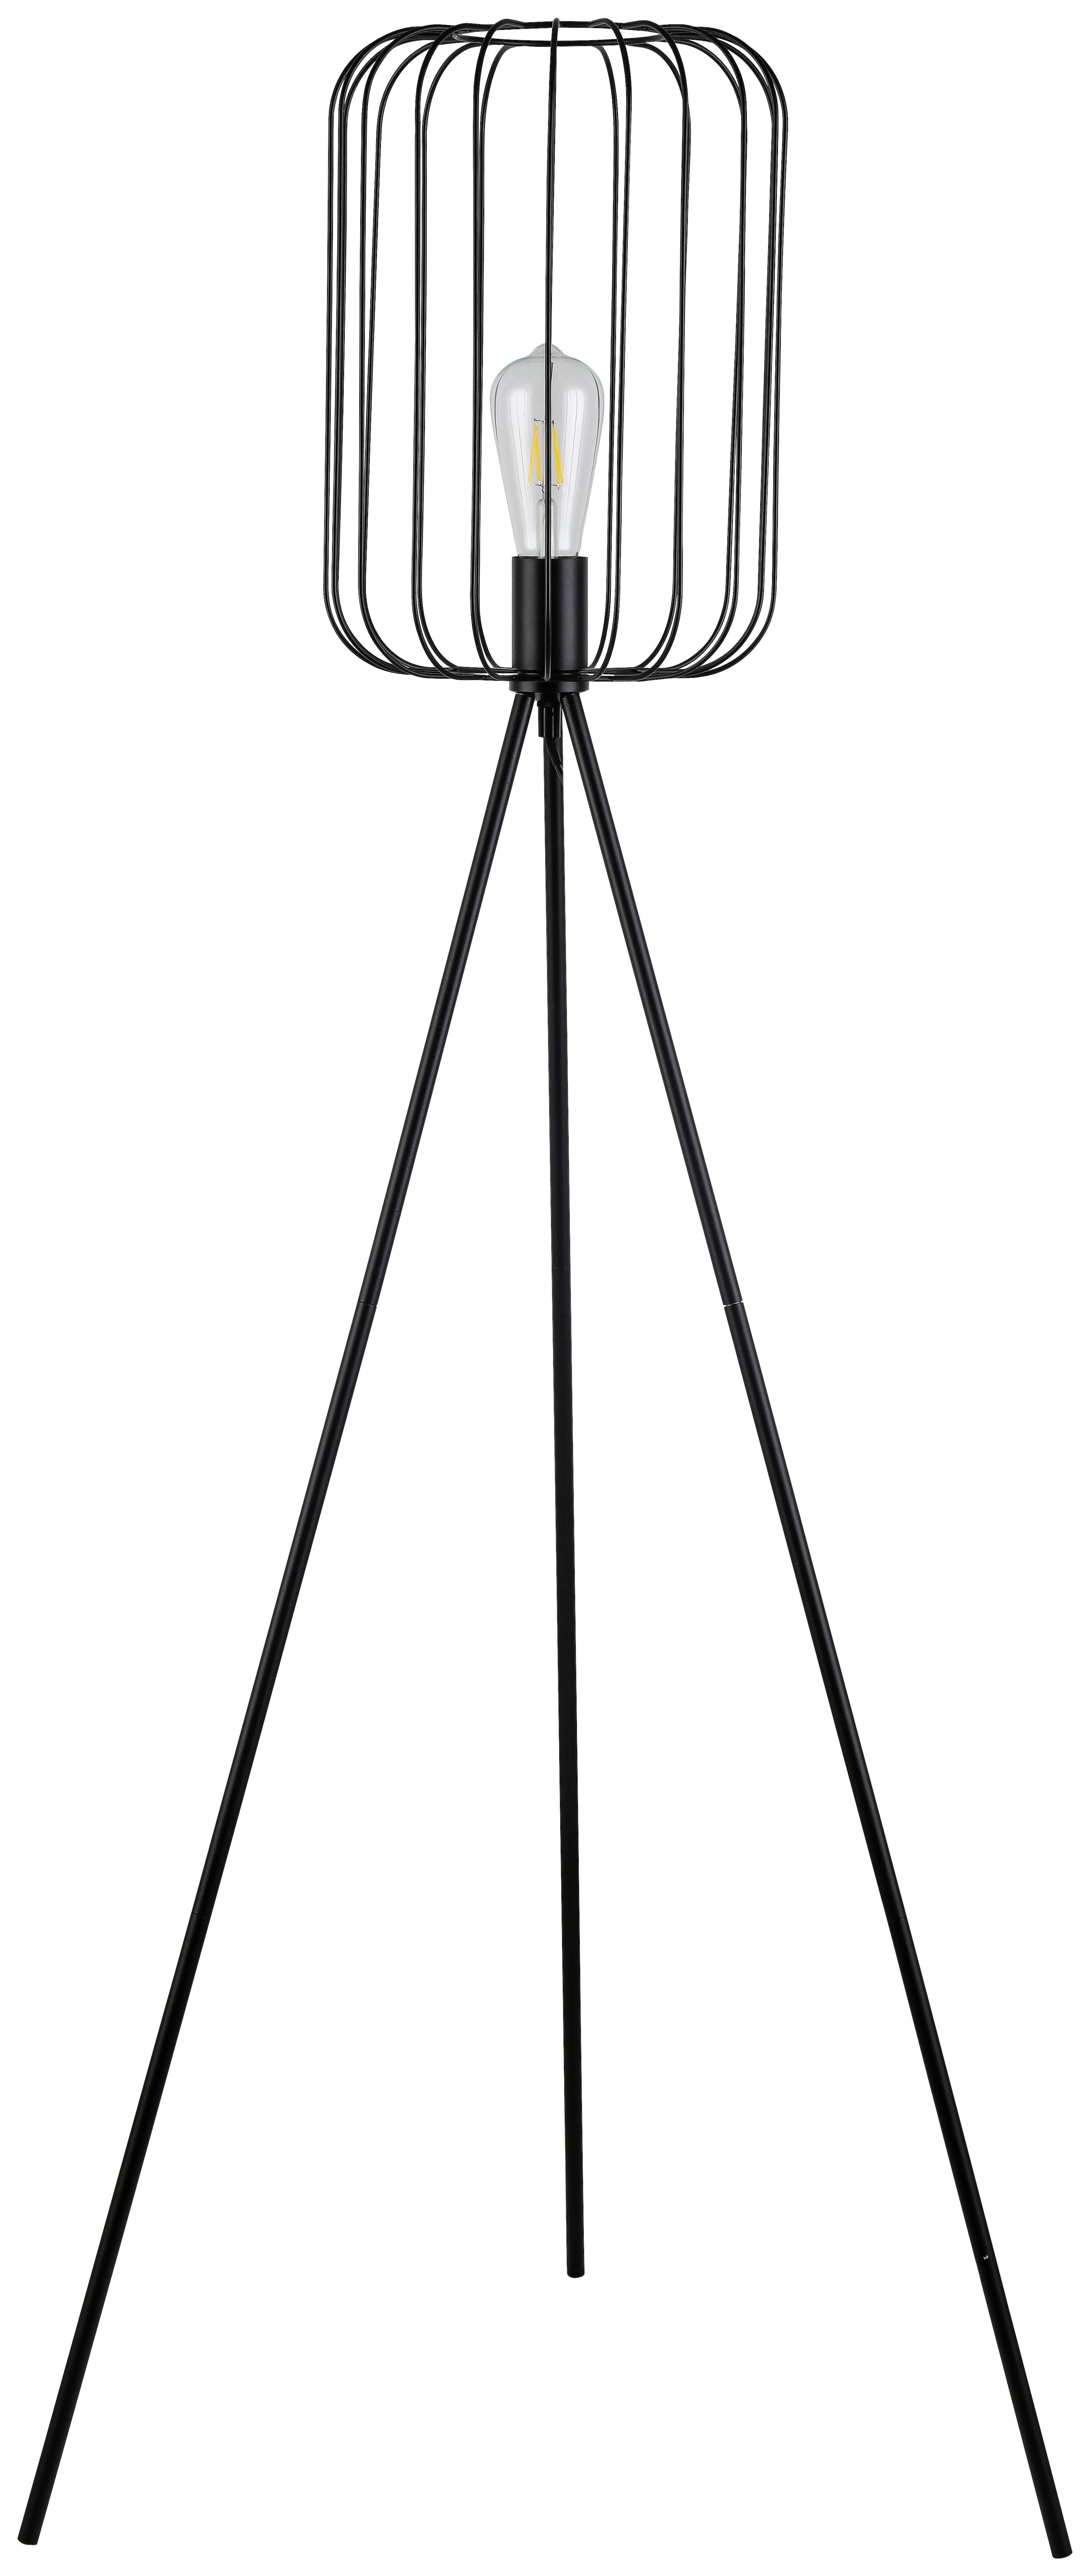 Stehlampe Viona Schwarz Matt mit Fußschalter Dreibeinig - Schwarz, ROMANTIK / LANDHAUS, Metall (26/140cm) - James Wood